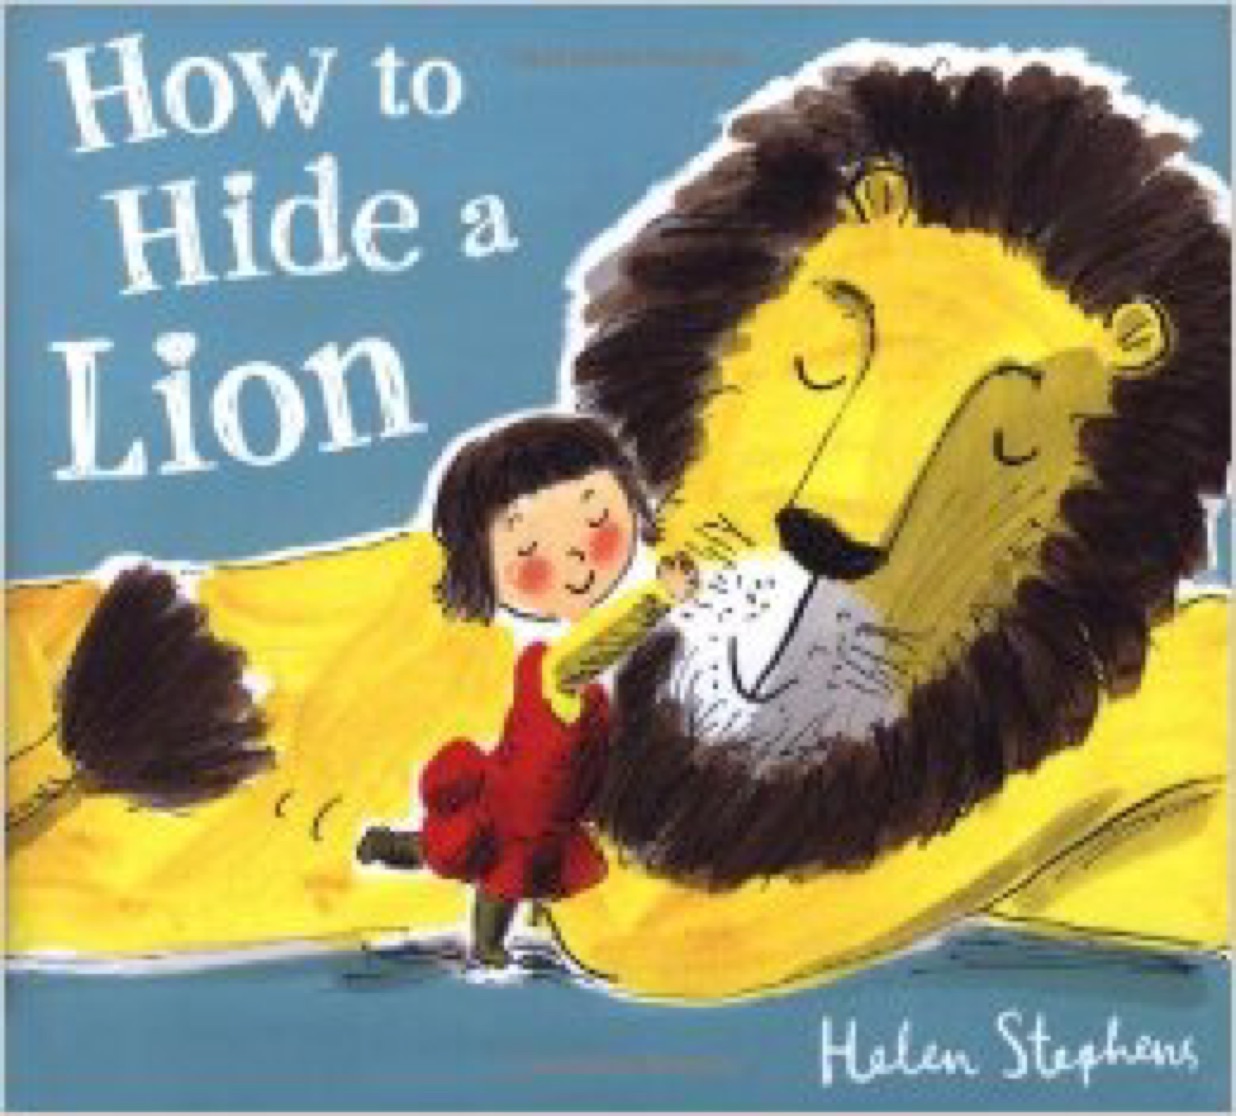 Dec 6, 2016 21:49 How to Hide a Lion